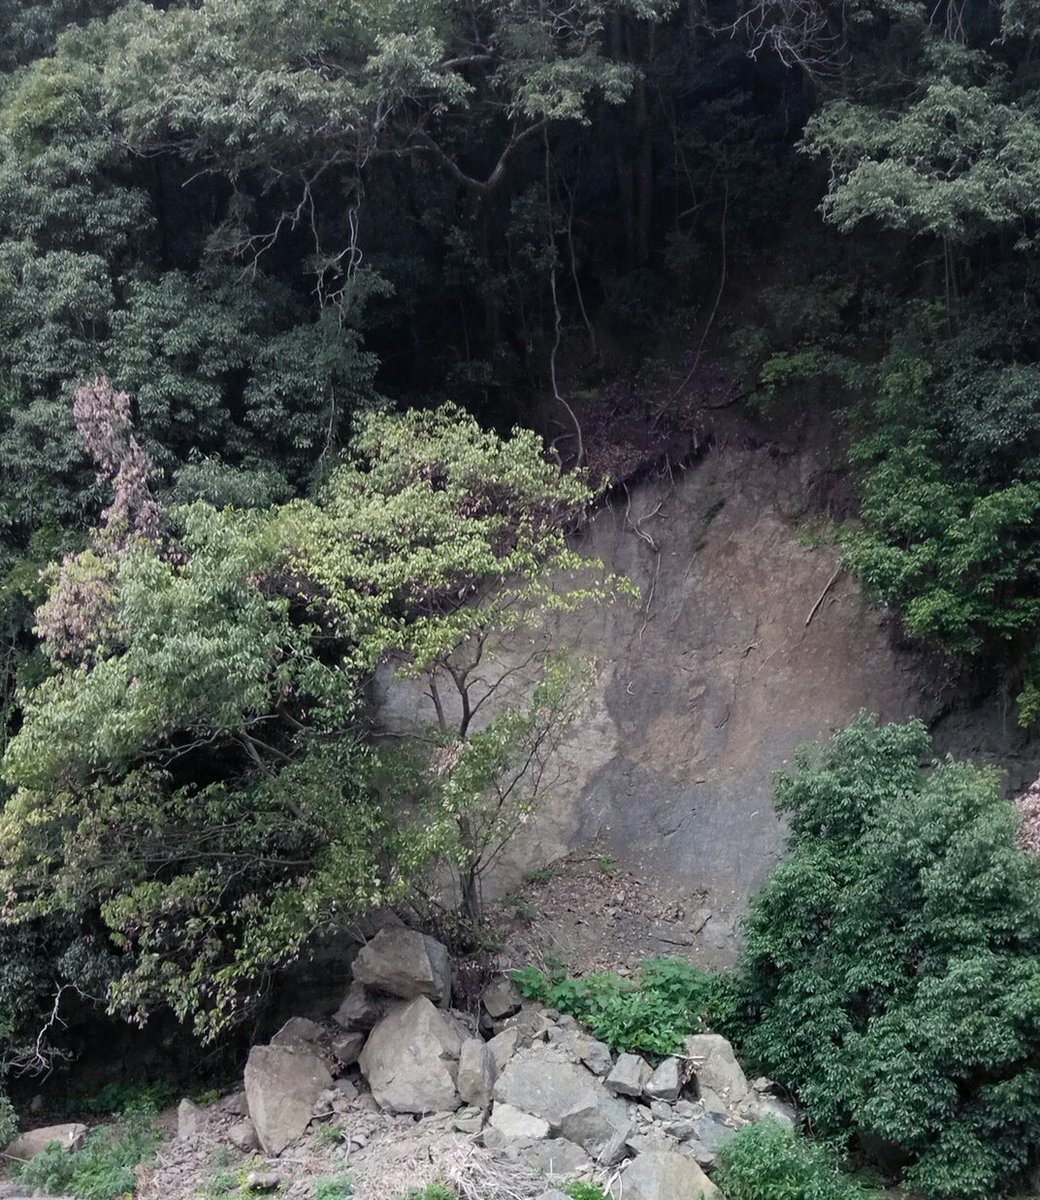 一産山本園 على تويتر 浜松市 天竜区 二俣 国道152号線 沿いの浅間山が大規模な土砂崩れをしております 川遊びなどをされる方はご注意を